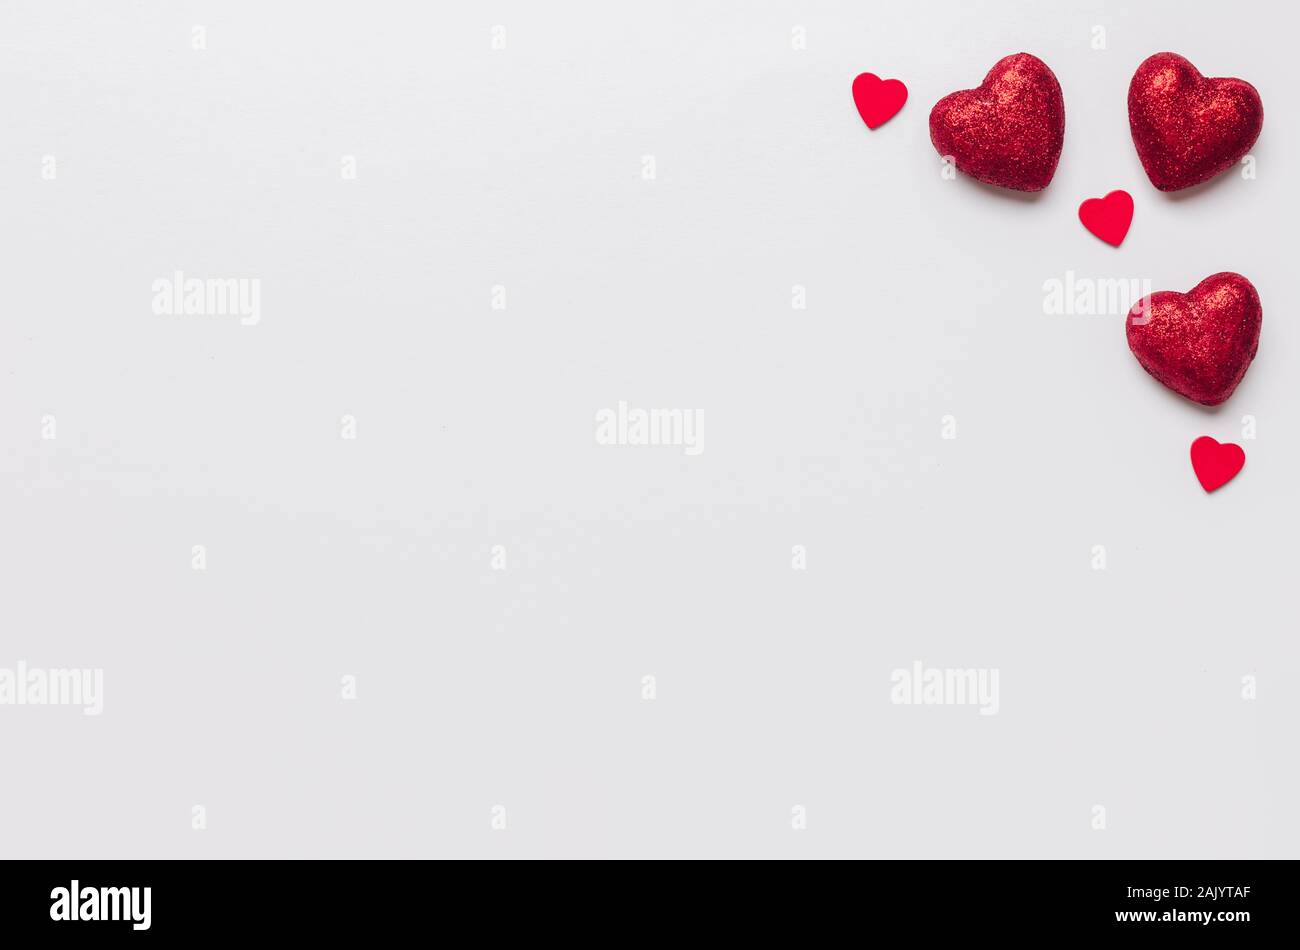 Stock photo de grandes y pequeños corazones rojos sobre fondo blanco. Corazones en las esquinas con un espacio para texto Foto de stock